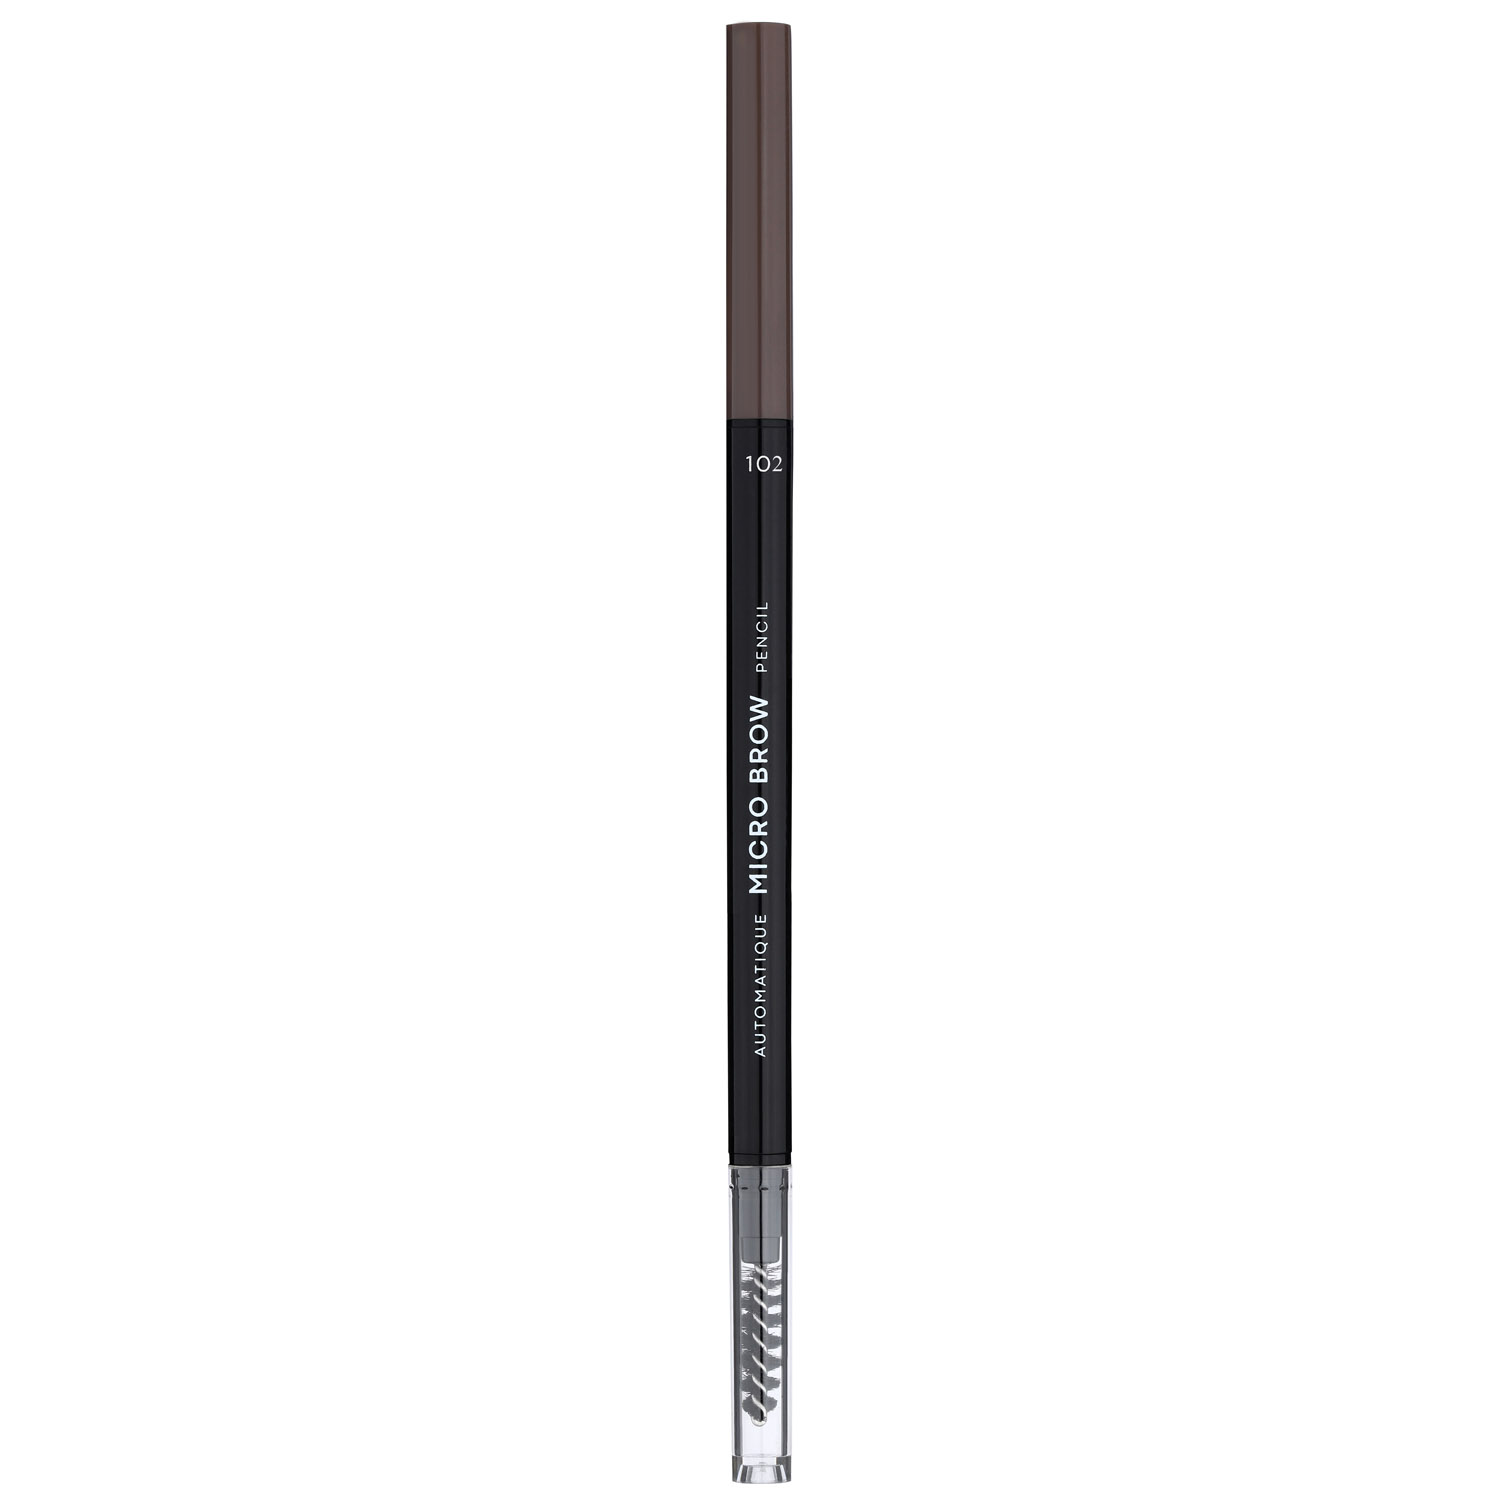 Карандаш для бровей LN Professional Micro Brow Pencil тон 102, 0.12 г - фото 1